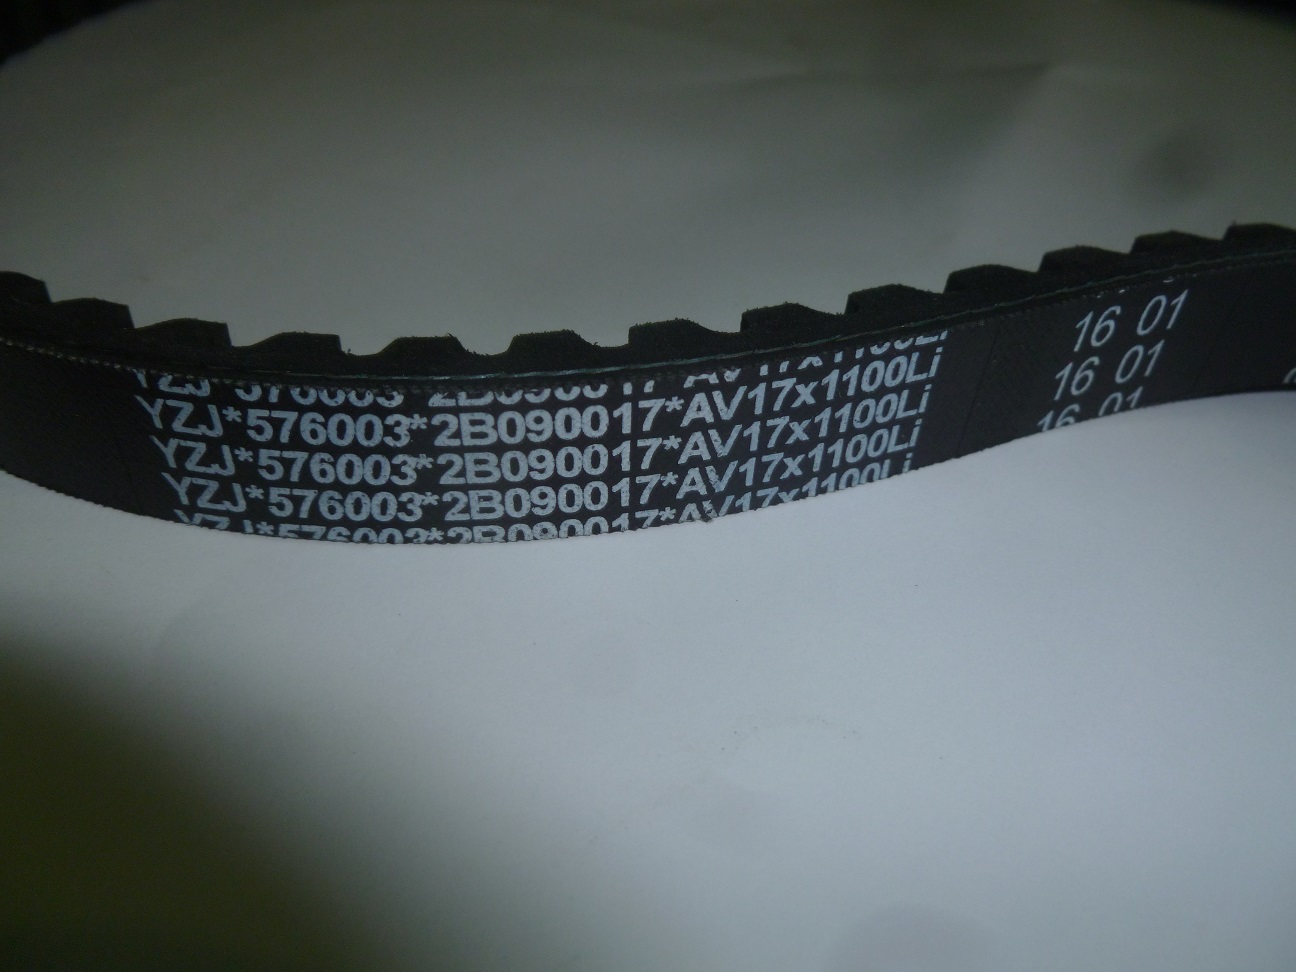 Ремень приводной зубчатый Weichai WP4.1D50E2/Belt